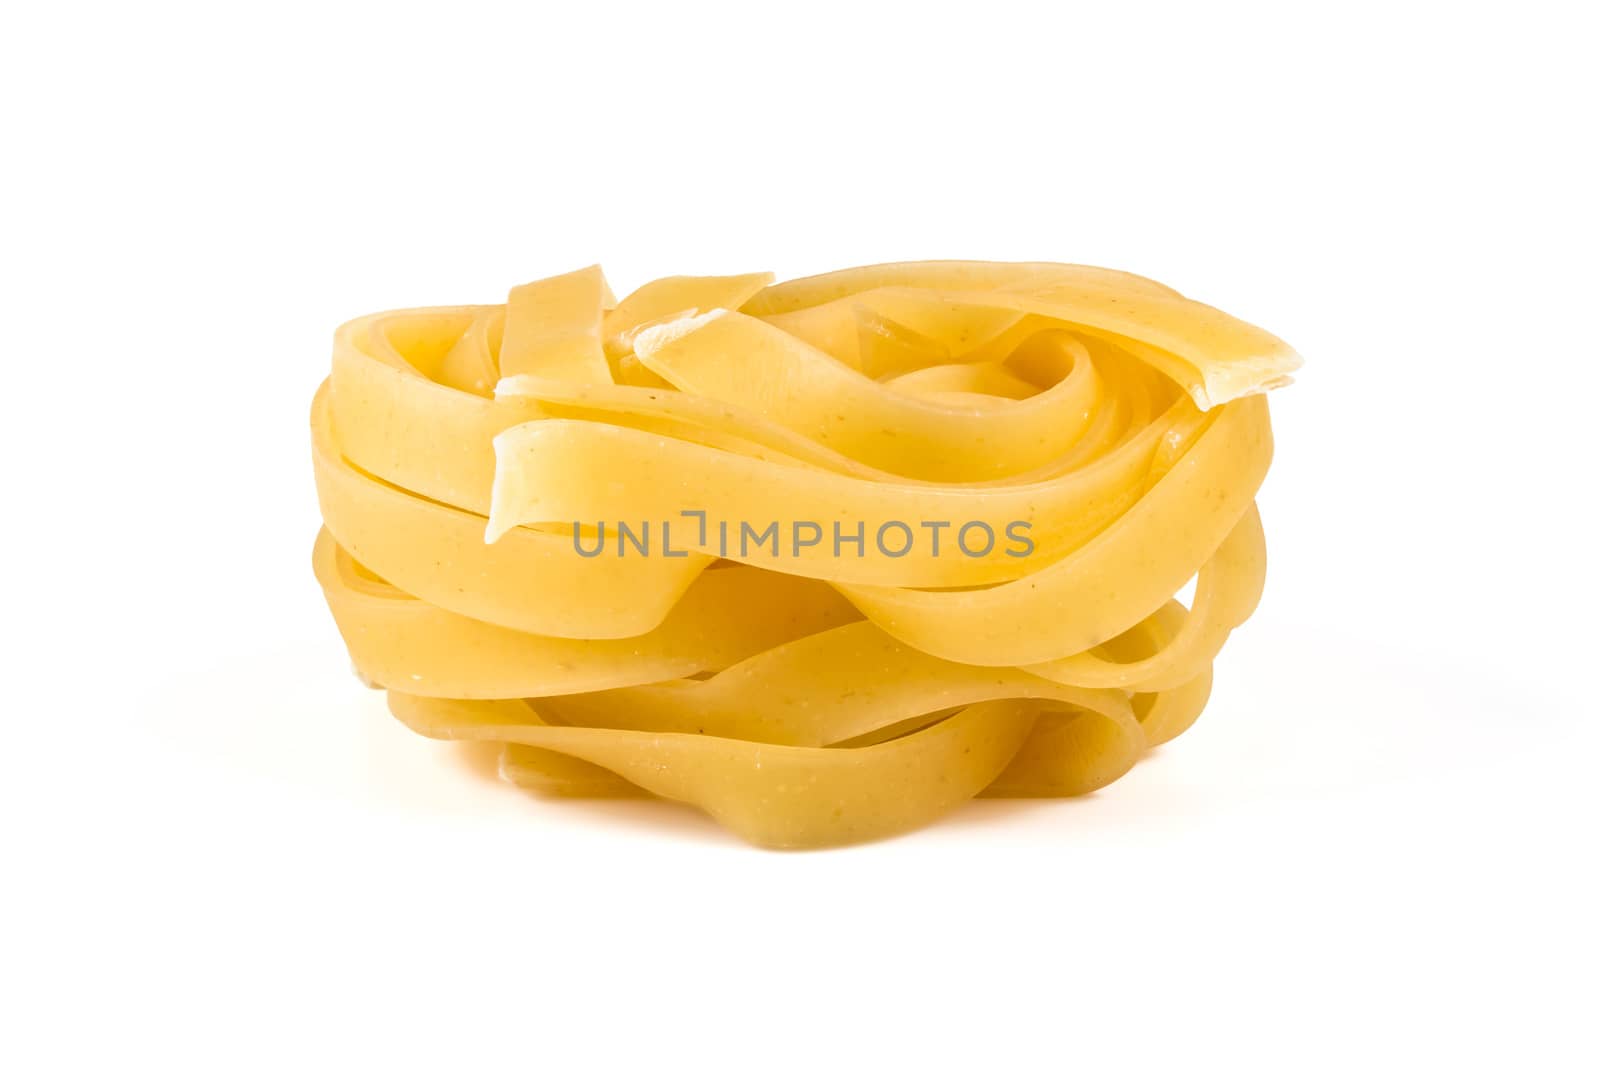 egg noodles, pasta by pilotL39